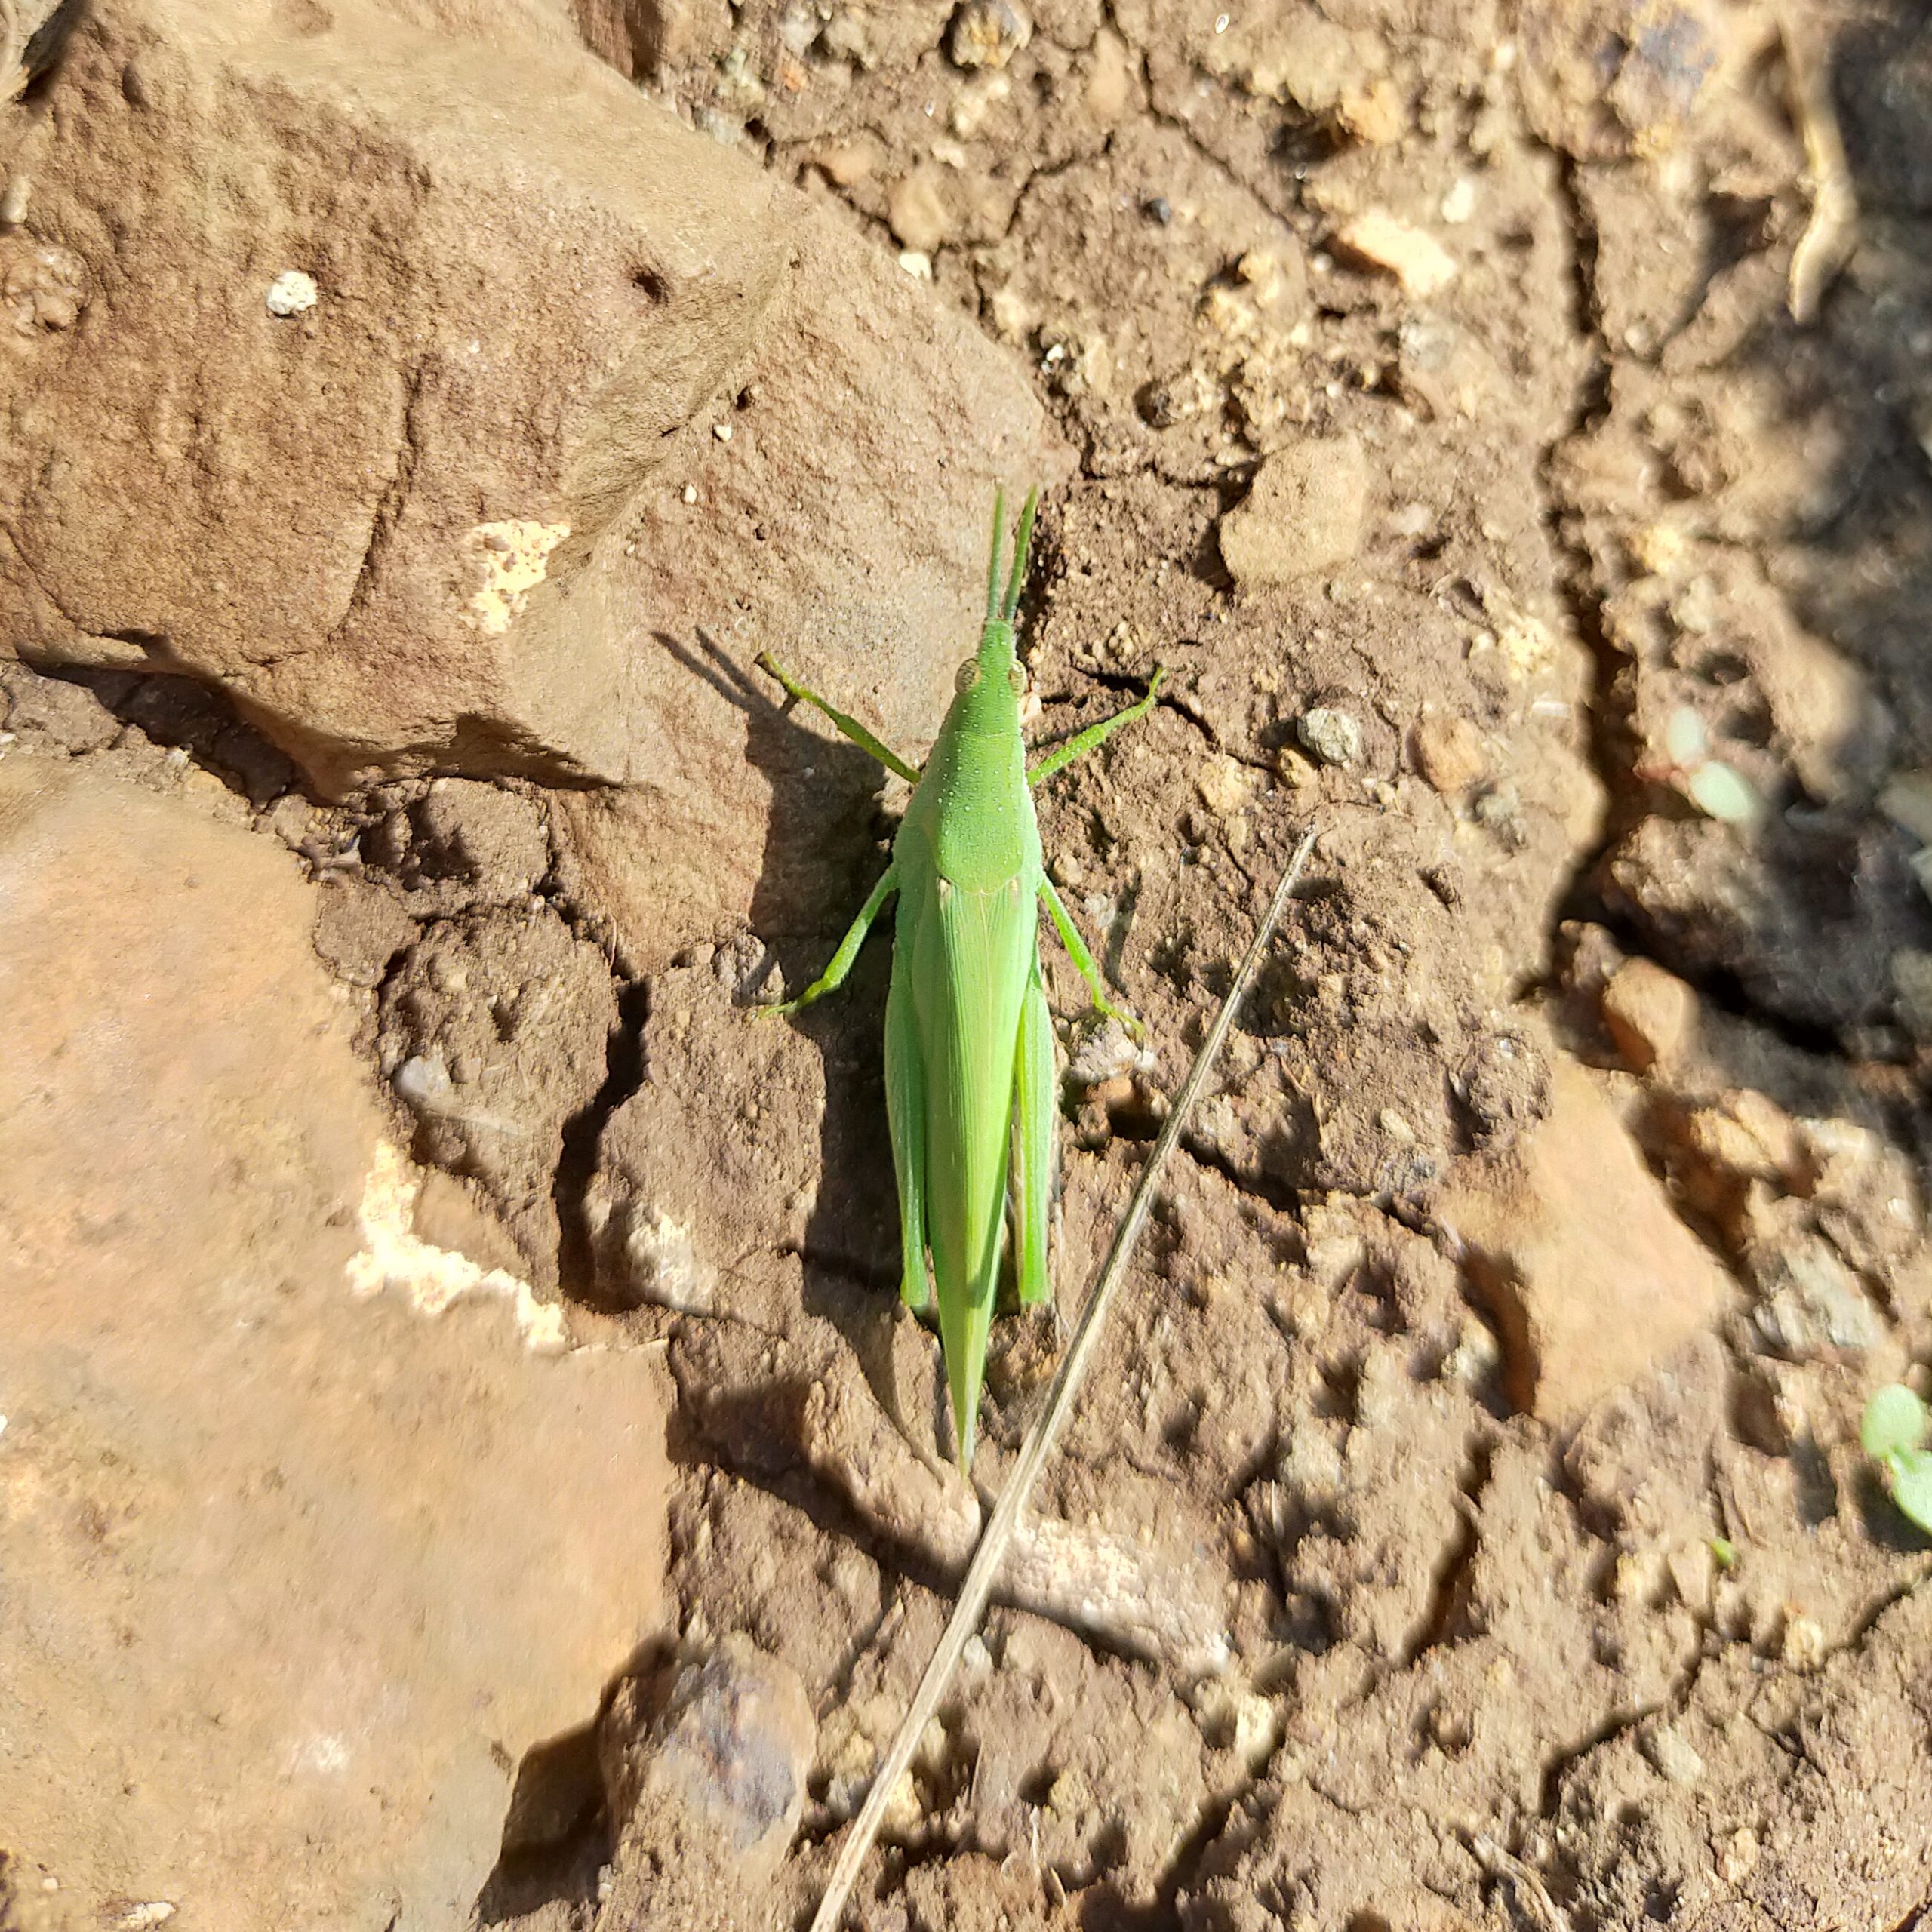 Grasshopper on ground